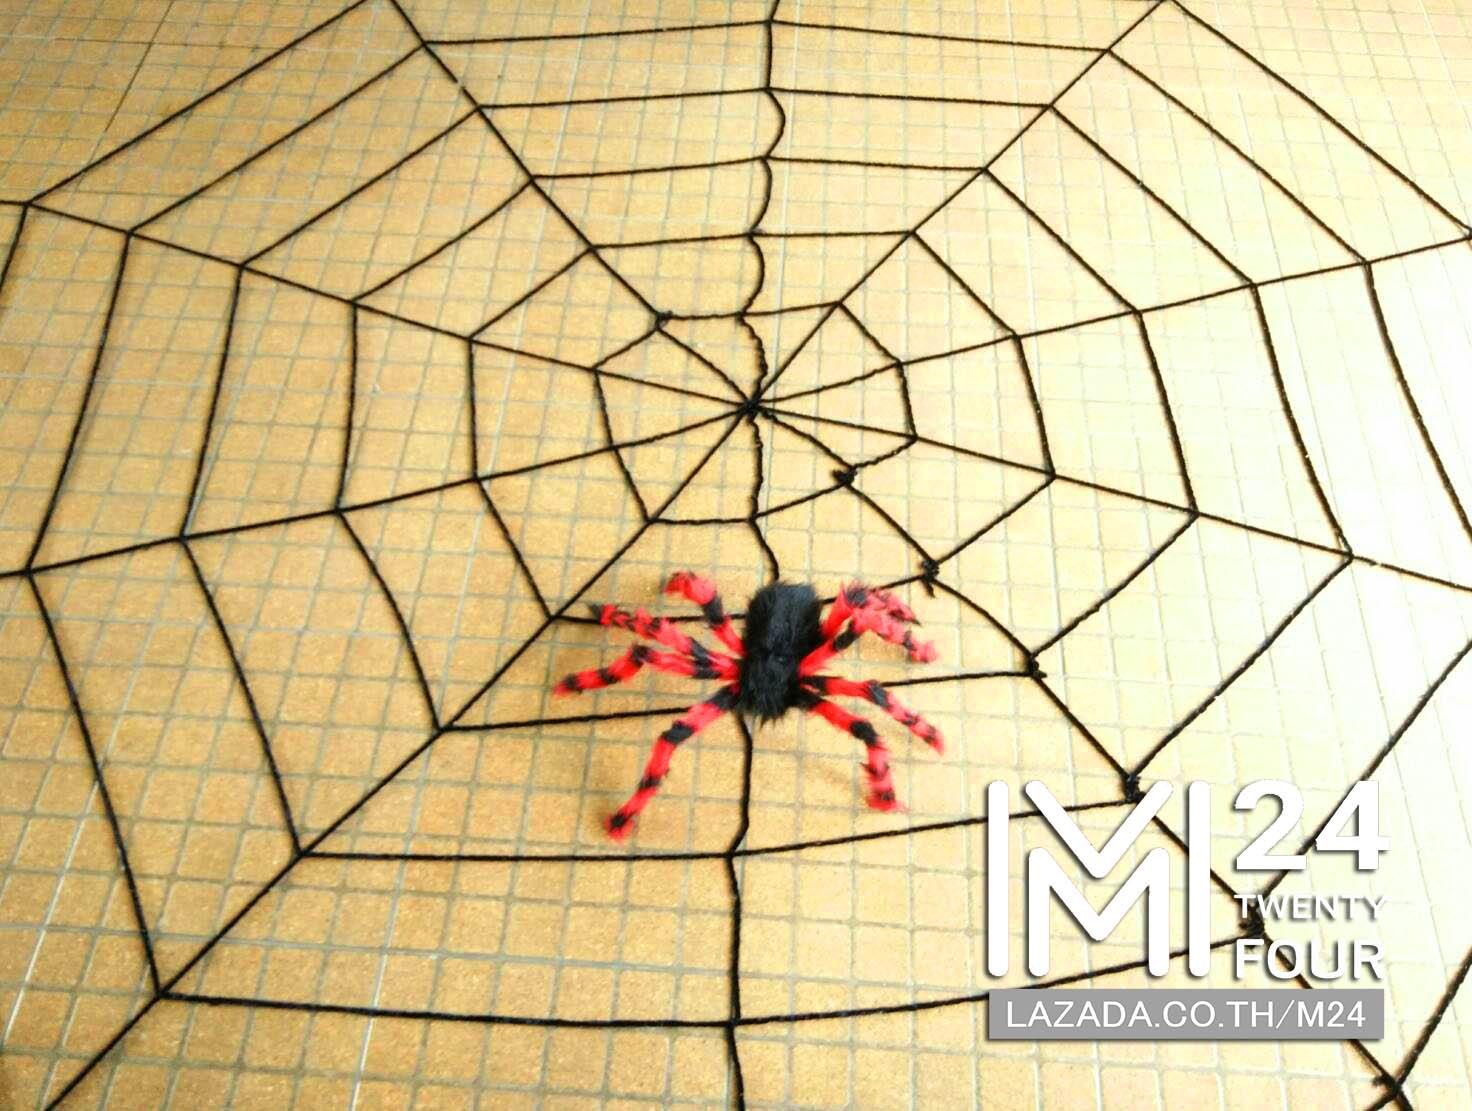 1 เซ็ต 2 ชิ้น ขนาด 3x3 เมตร ใยแมงมุมยักษ์ สีดำ 1 ชิ้น + แมงมุมยักษ์ สีแดงดำ 1 ตัว แมงมุมปลอม แมงมุม ยักษ์ ตัวใหญ่ ของปลอม ของเล่น ตัวตลก ของเล่นแกล้งคน อุปกรณ์ตกแต่ง ฮาโลวีน black widow giant spider web party happy halloween